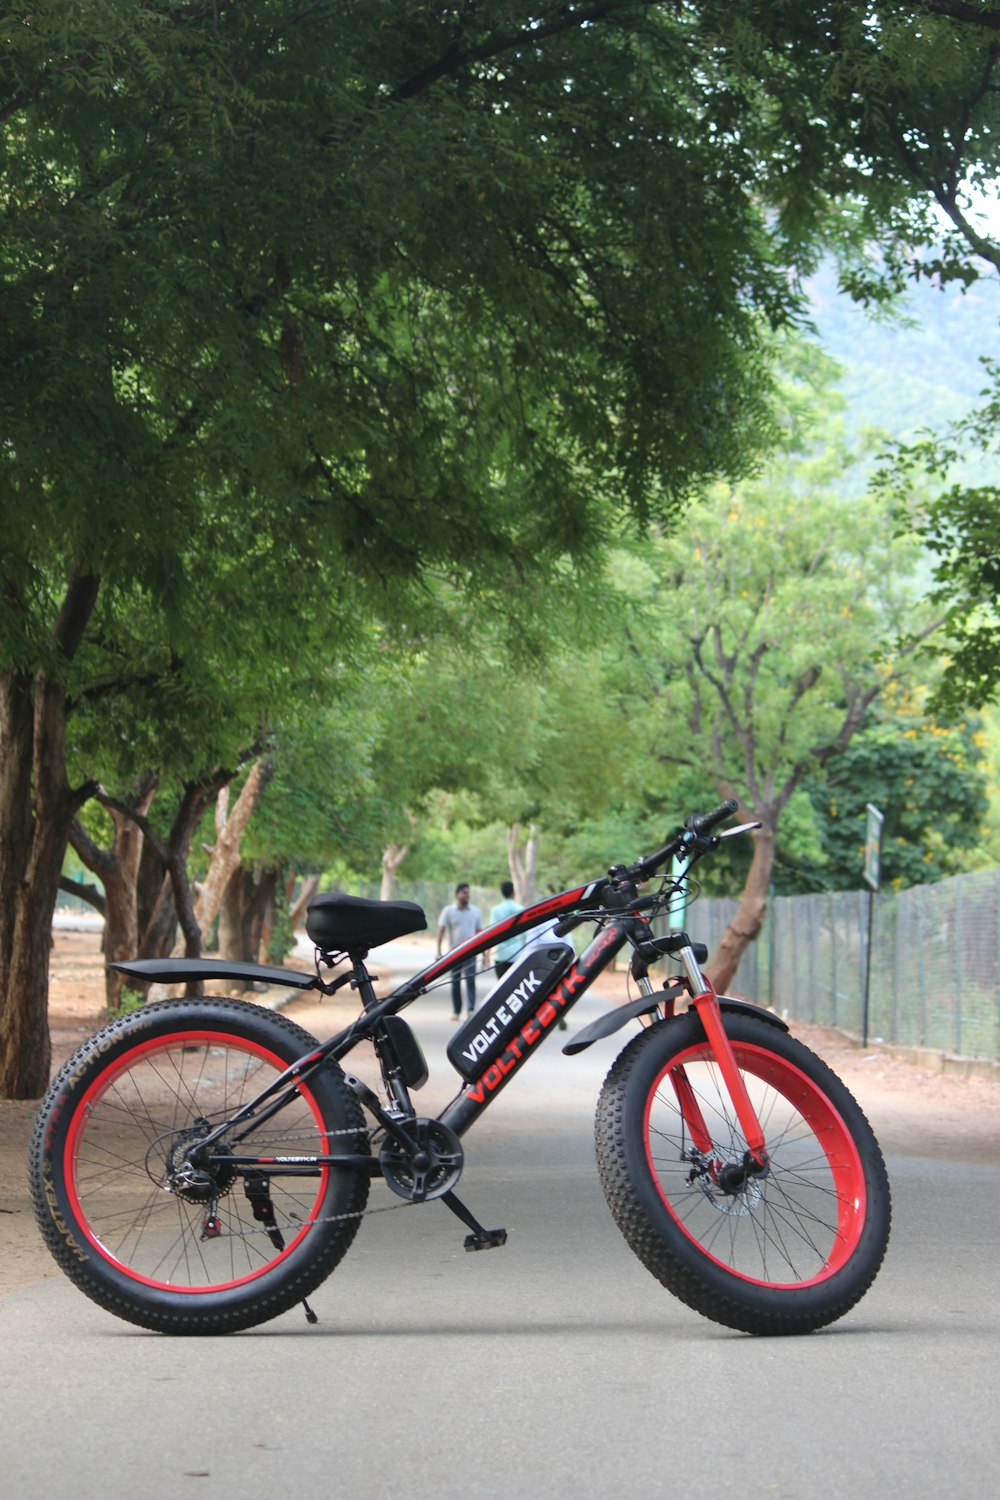 Una bicicleta roja y negra estacionada al costado de una carretera